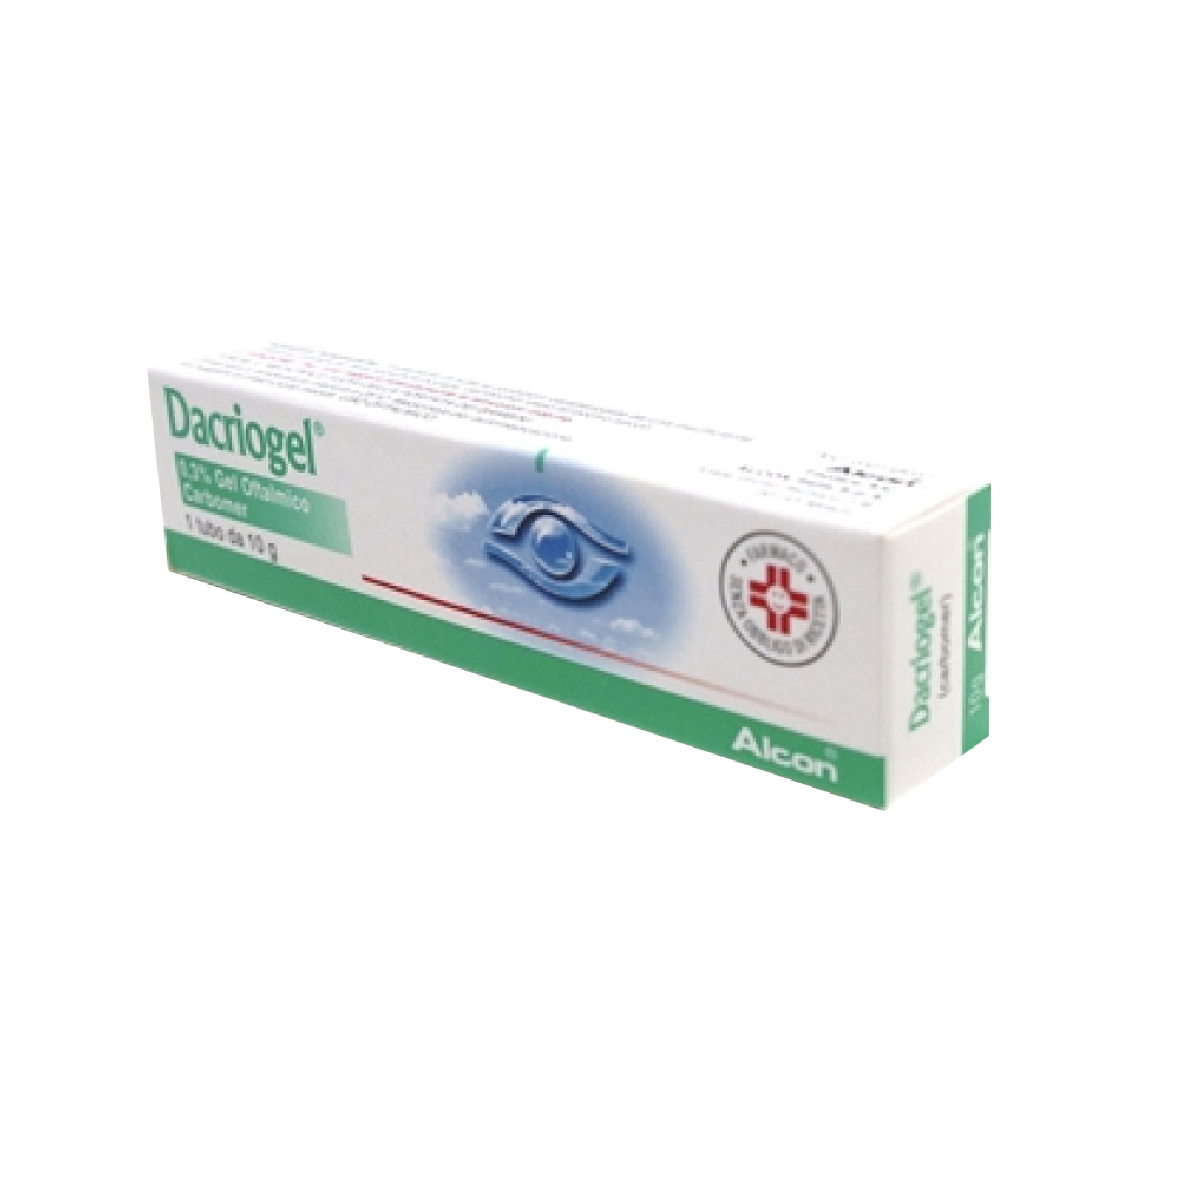 Dacriogel gel oftalmico 10g